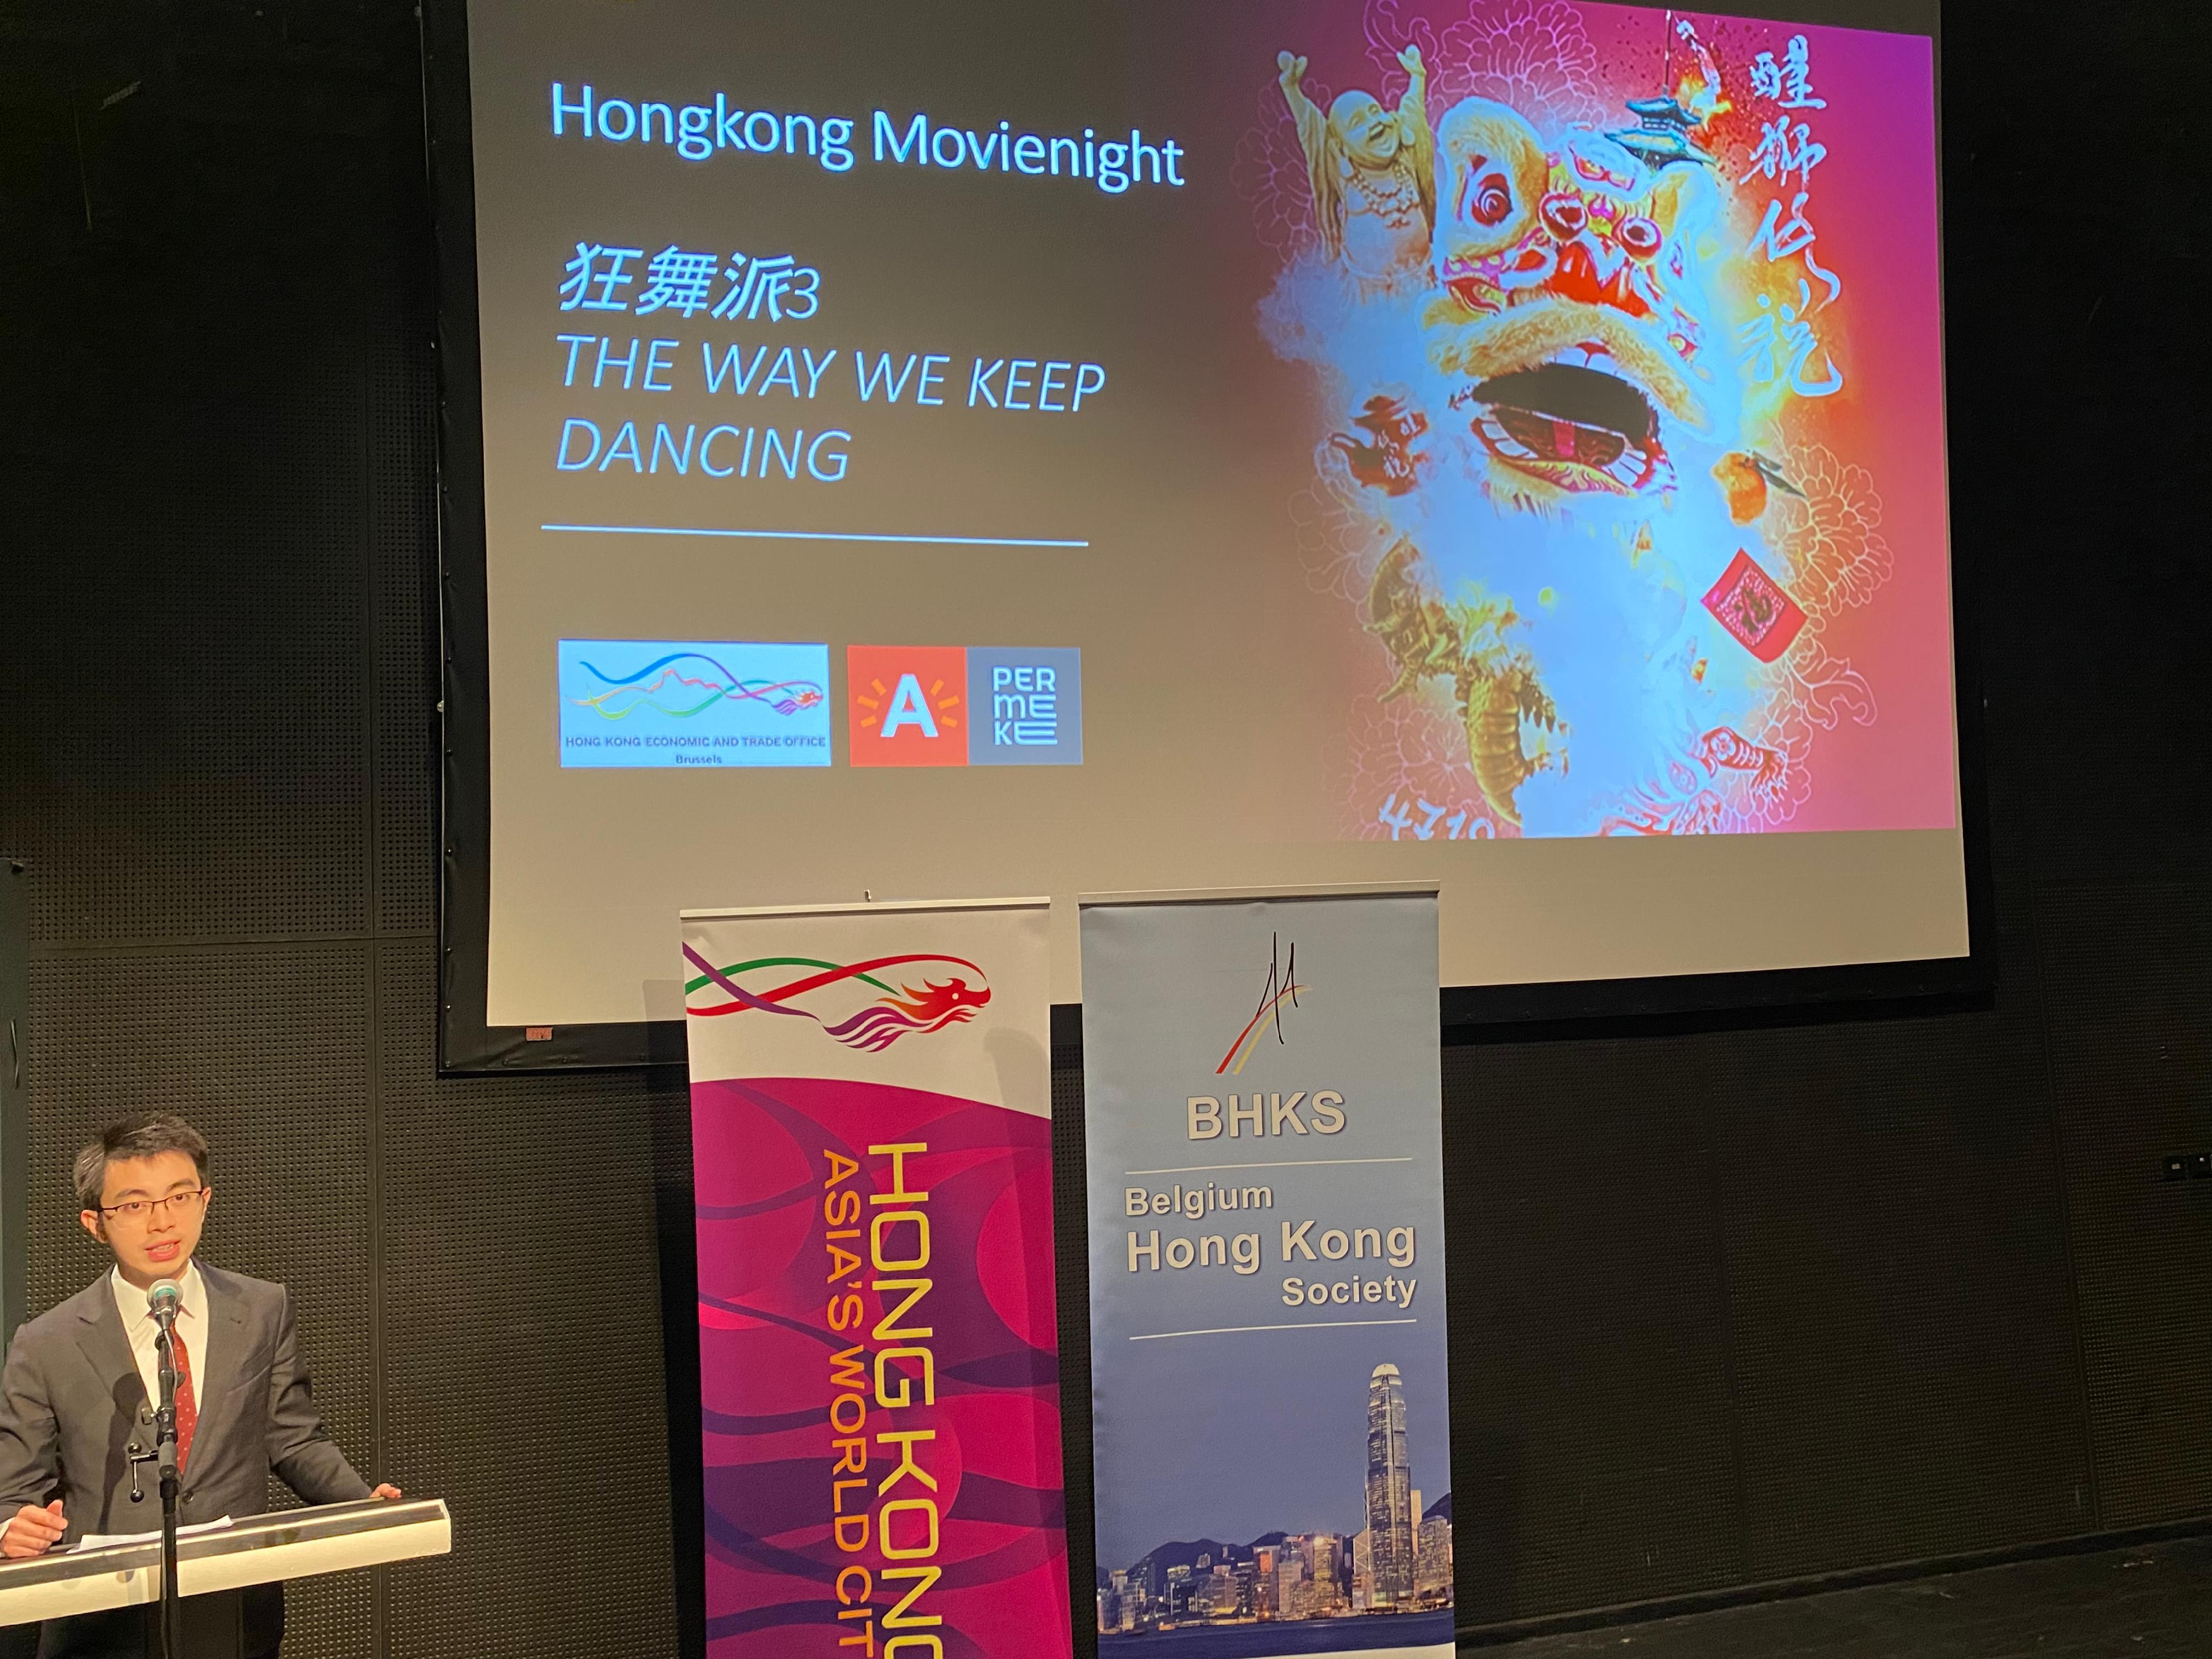 香港驻布鲁塞尔经济贸易办事处署理副代表蔡禧扬二月三日（安特卫普时间）于比利时安特卫普举办的《醒狮传说》展览——香港电影之夜的开幕仪式上致辞。